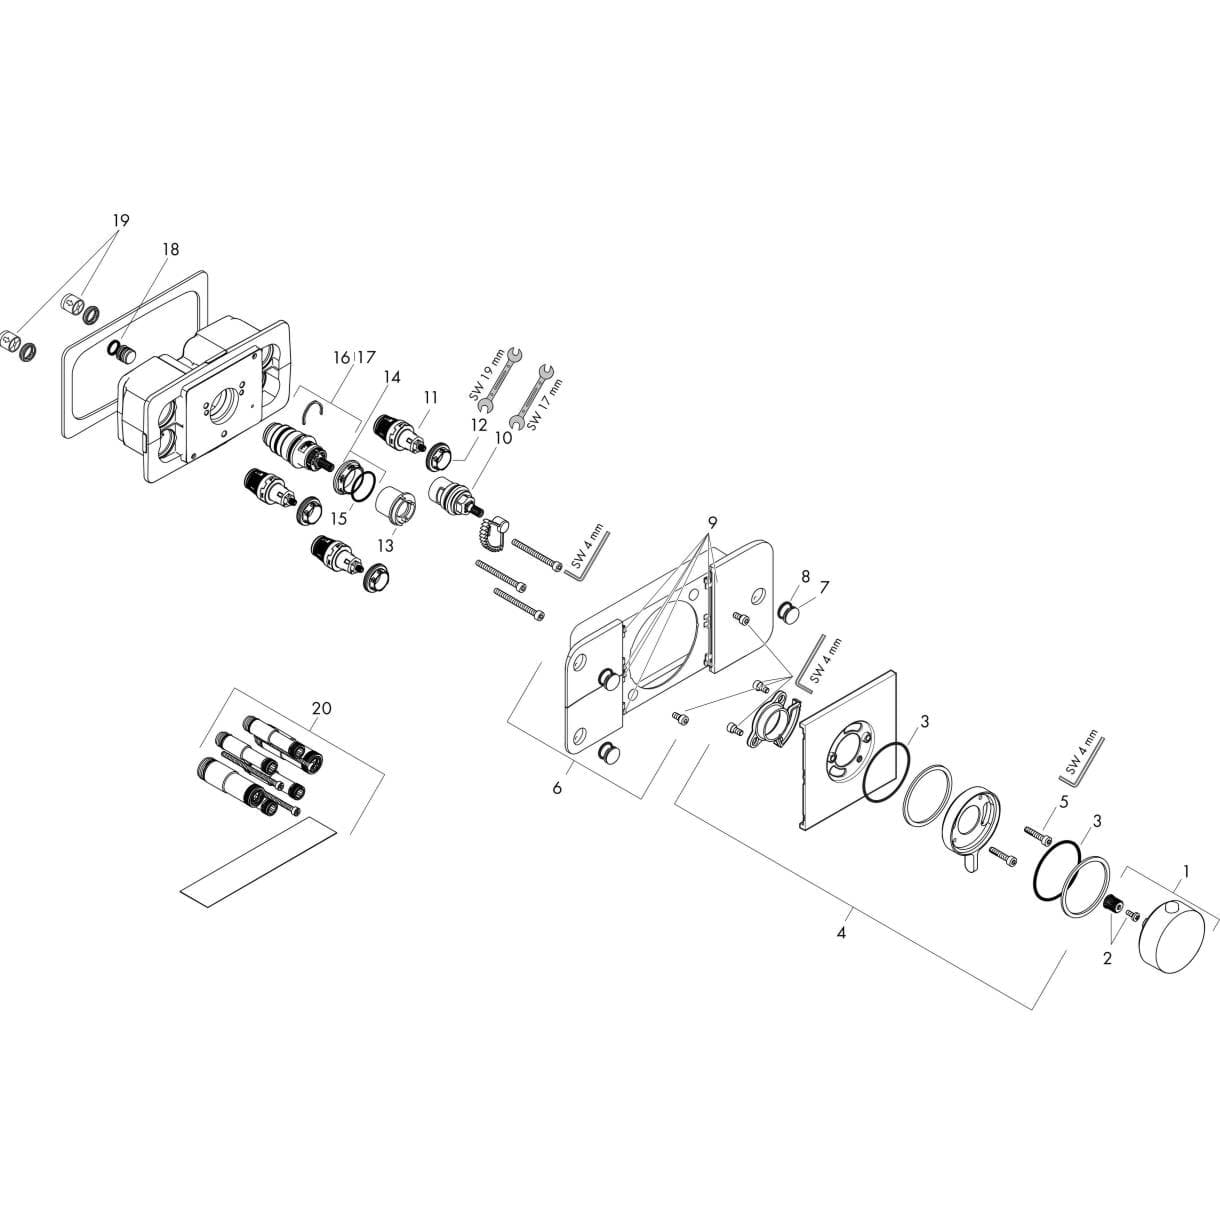 HANSGROHE AXOR One Termostatik modül ankastre montaj, 3 çıkış için 45713670 resmi